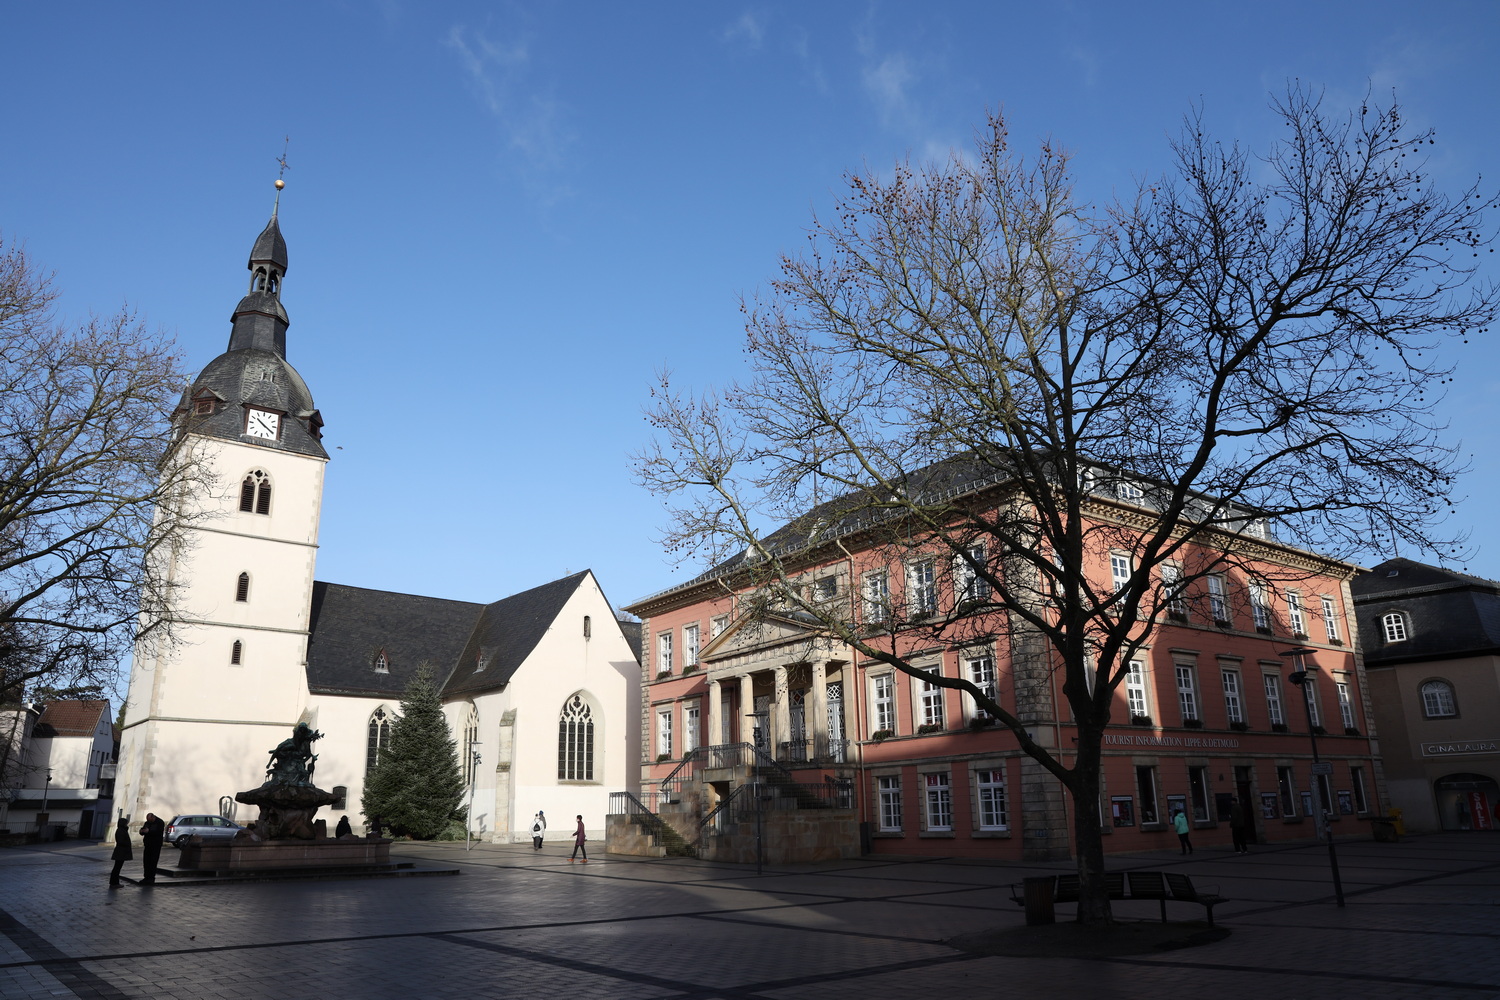 Marktplatz Detmold mit Pfarrkirche (1300), Rathaus und Sonne am Sonntag